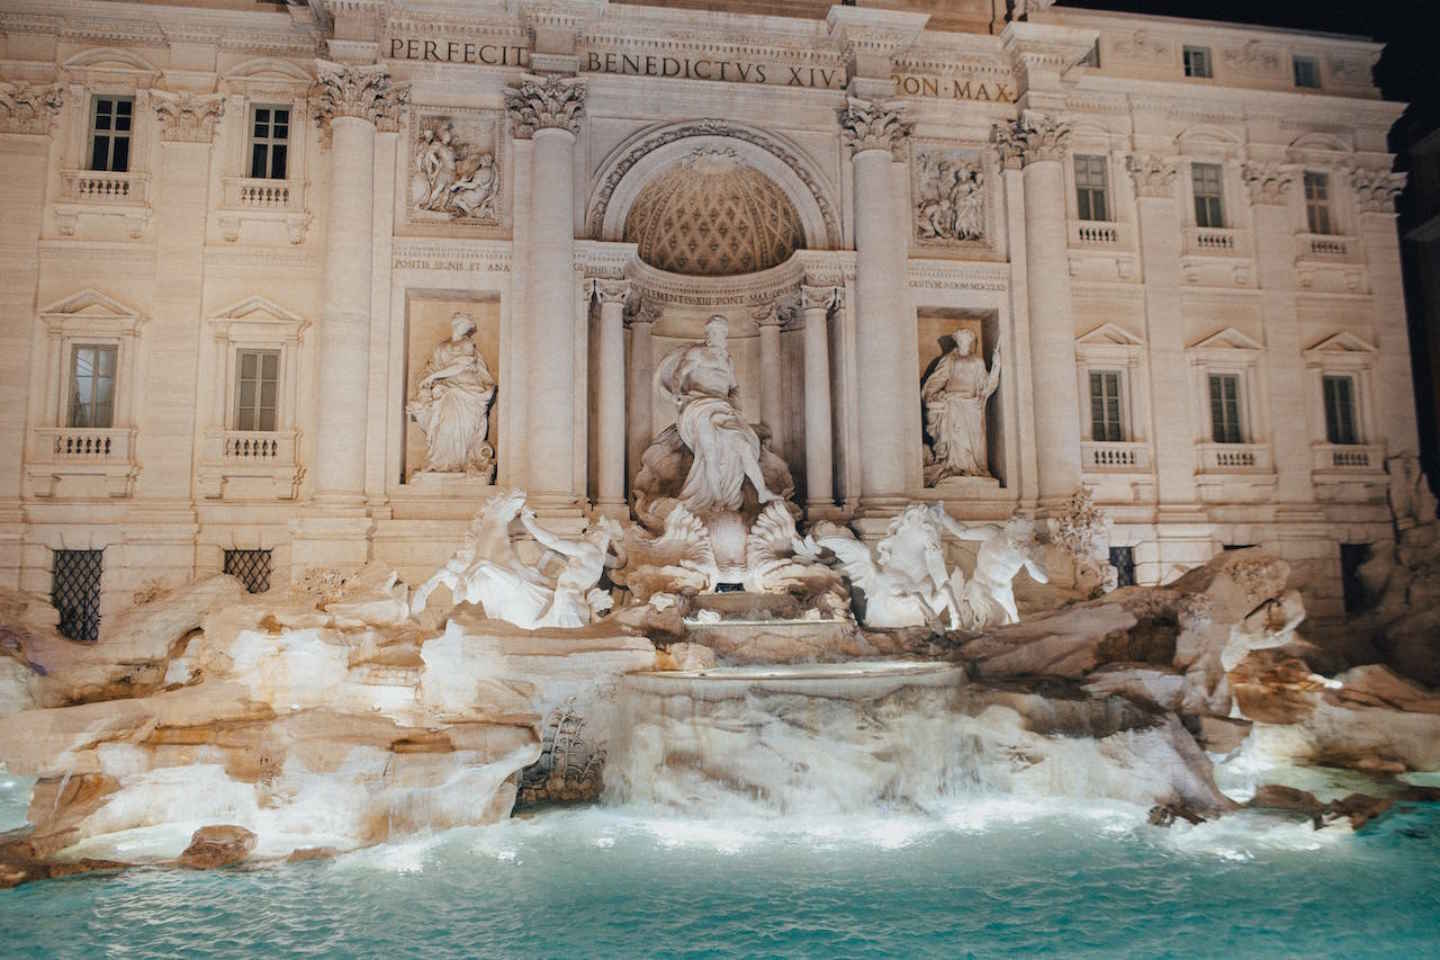 Новости мира / Интересные новости / Туристы оставили в римском фонтане рекордную сумму